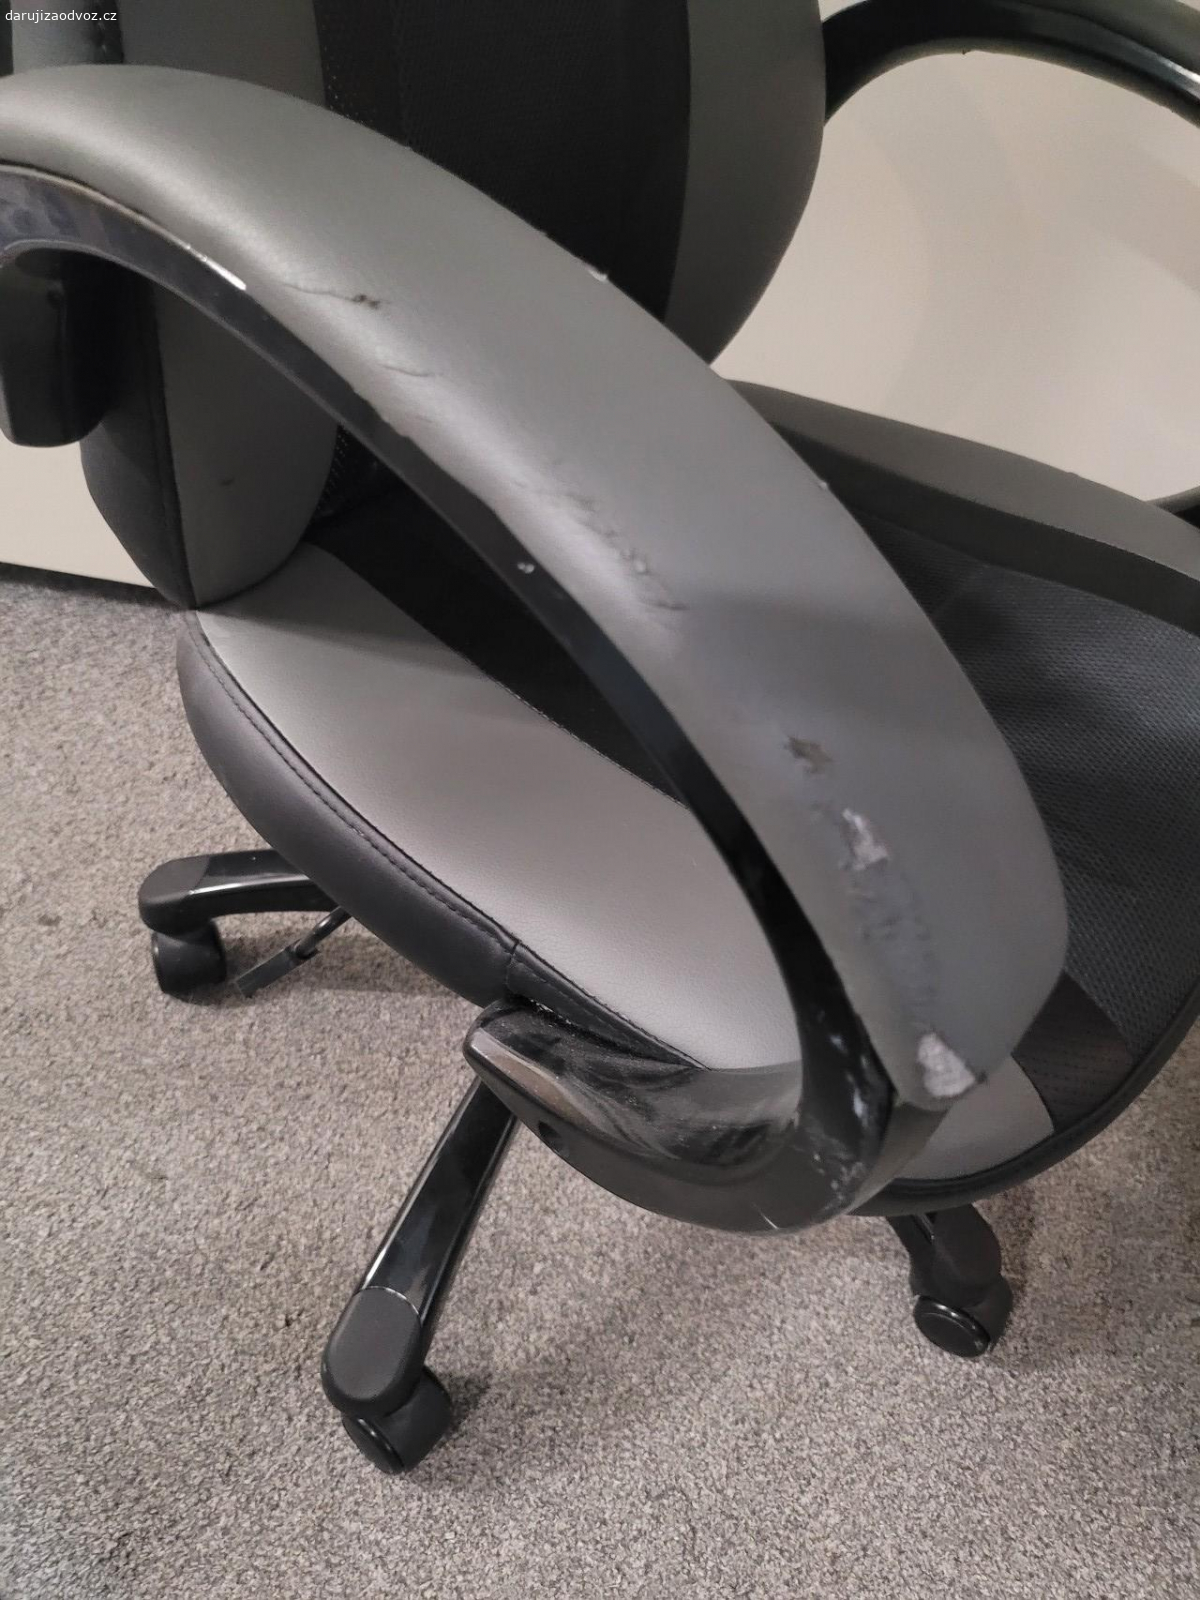 kancelářská židle. funkční pouze na rukojeti podrena od stolu 
předání orlova